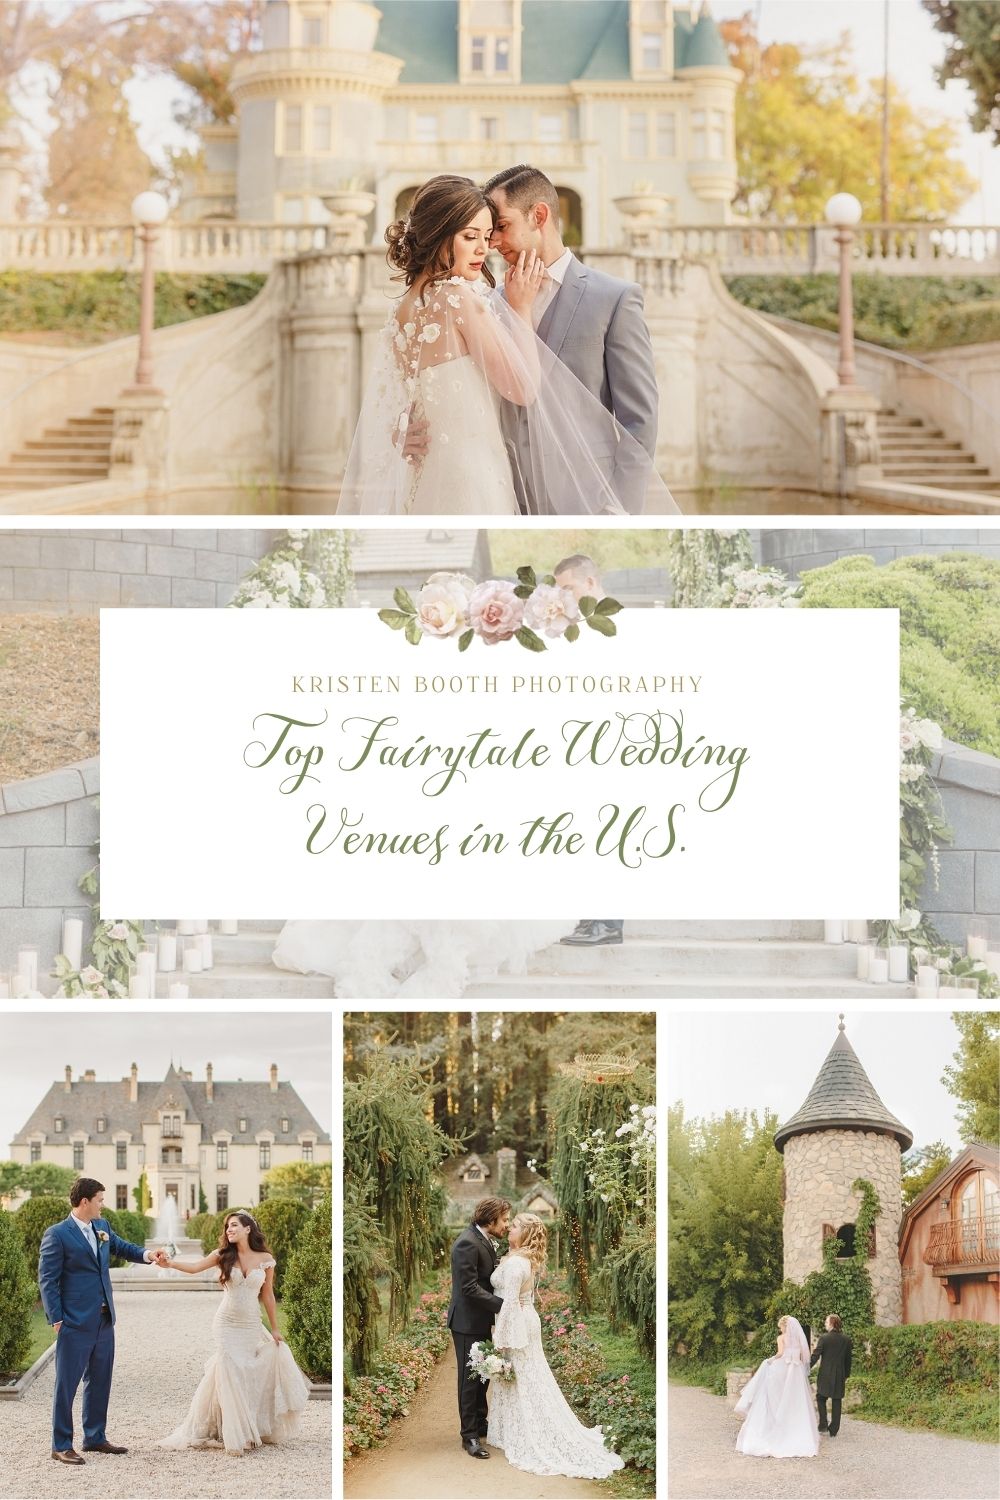 Top fairytale wedding venues in the U.S.